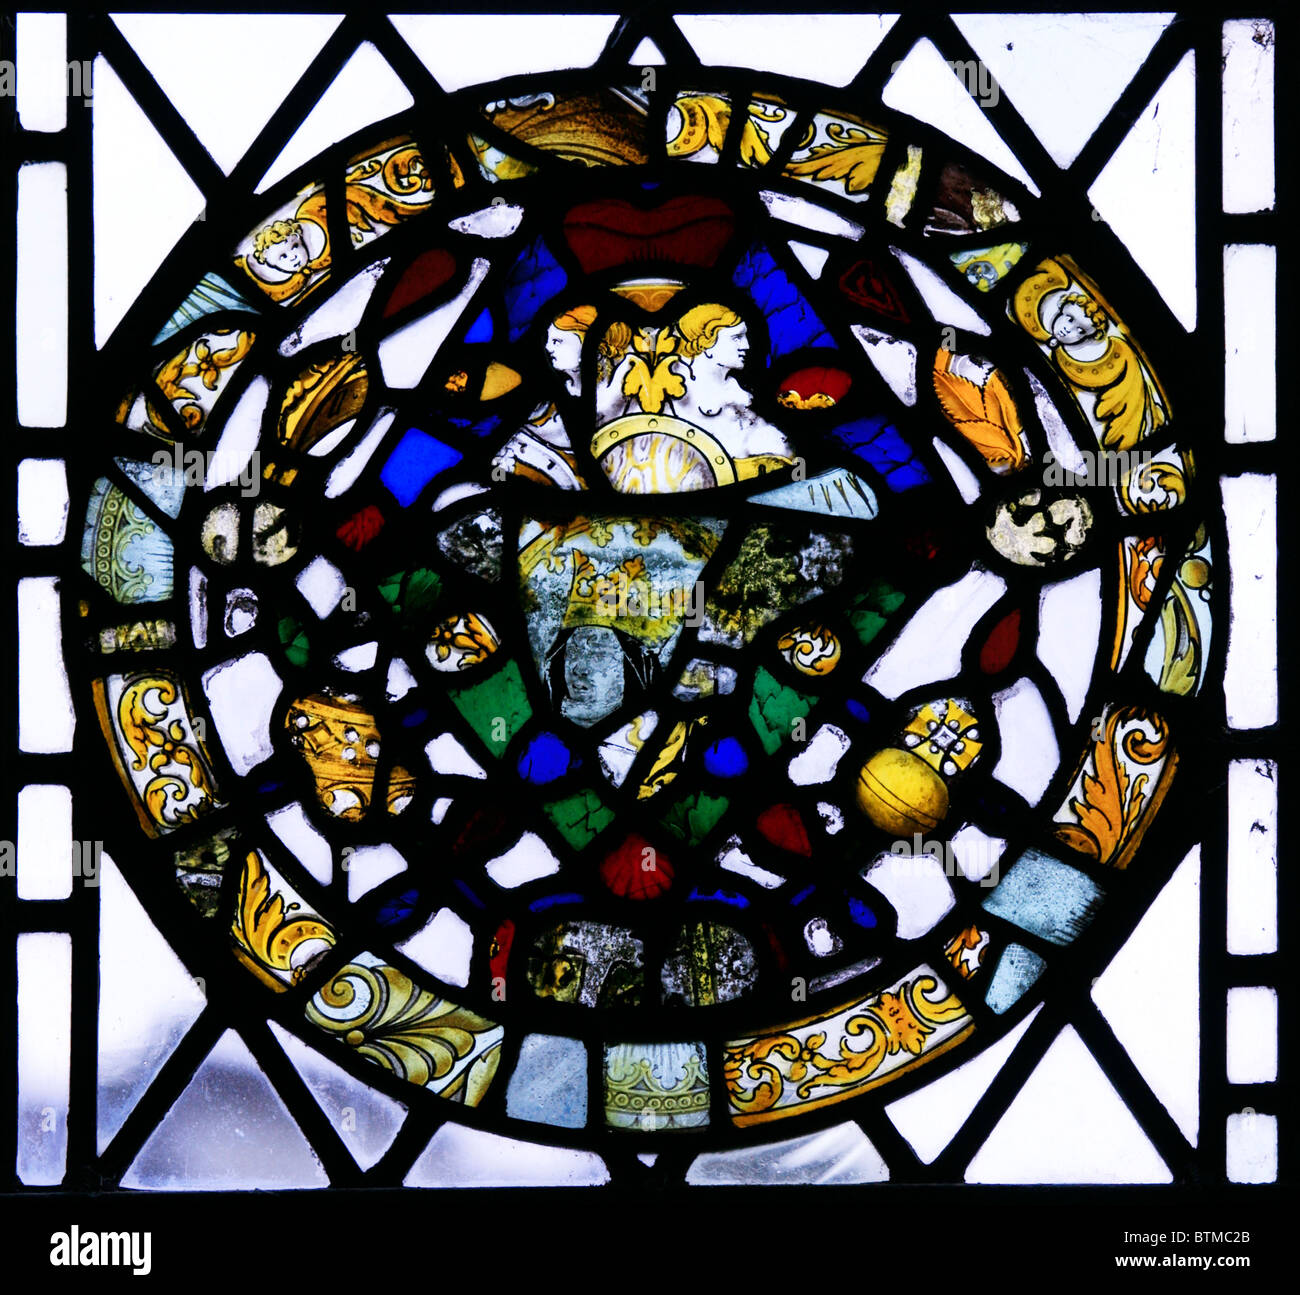 Fragments de vitrail médiéval remis en place dans une fenêtre moderne, St Michael's and All Angels Church, Teffont Evias, Wiltshire. Banque D'Images